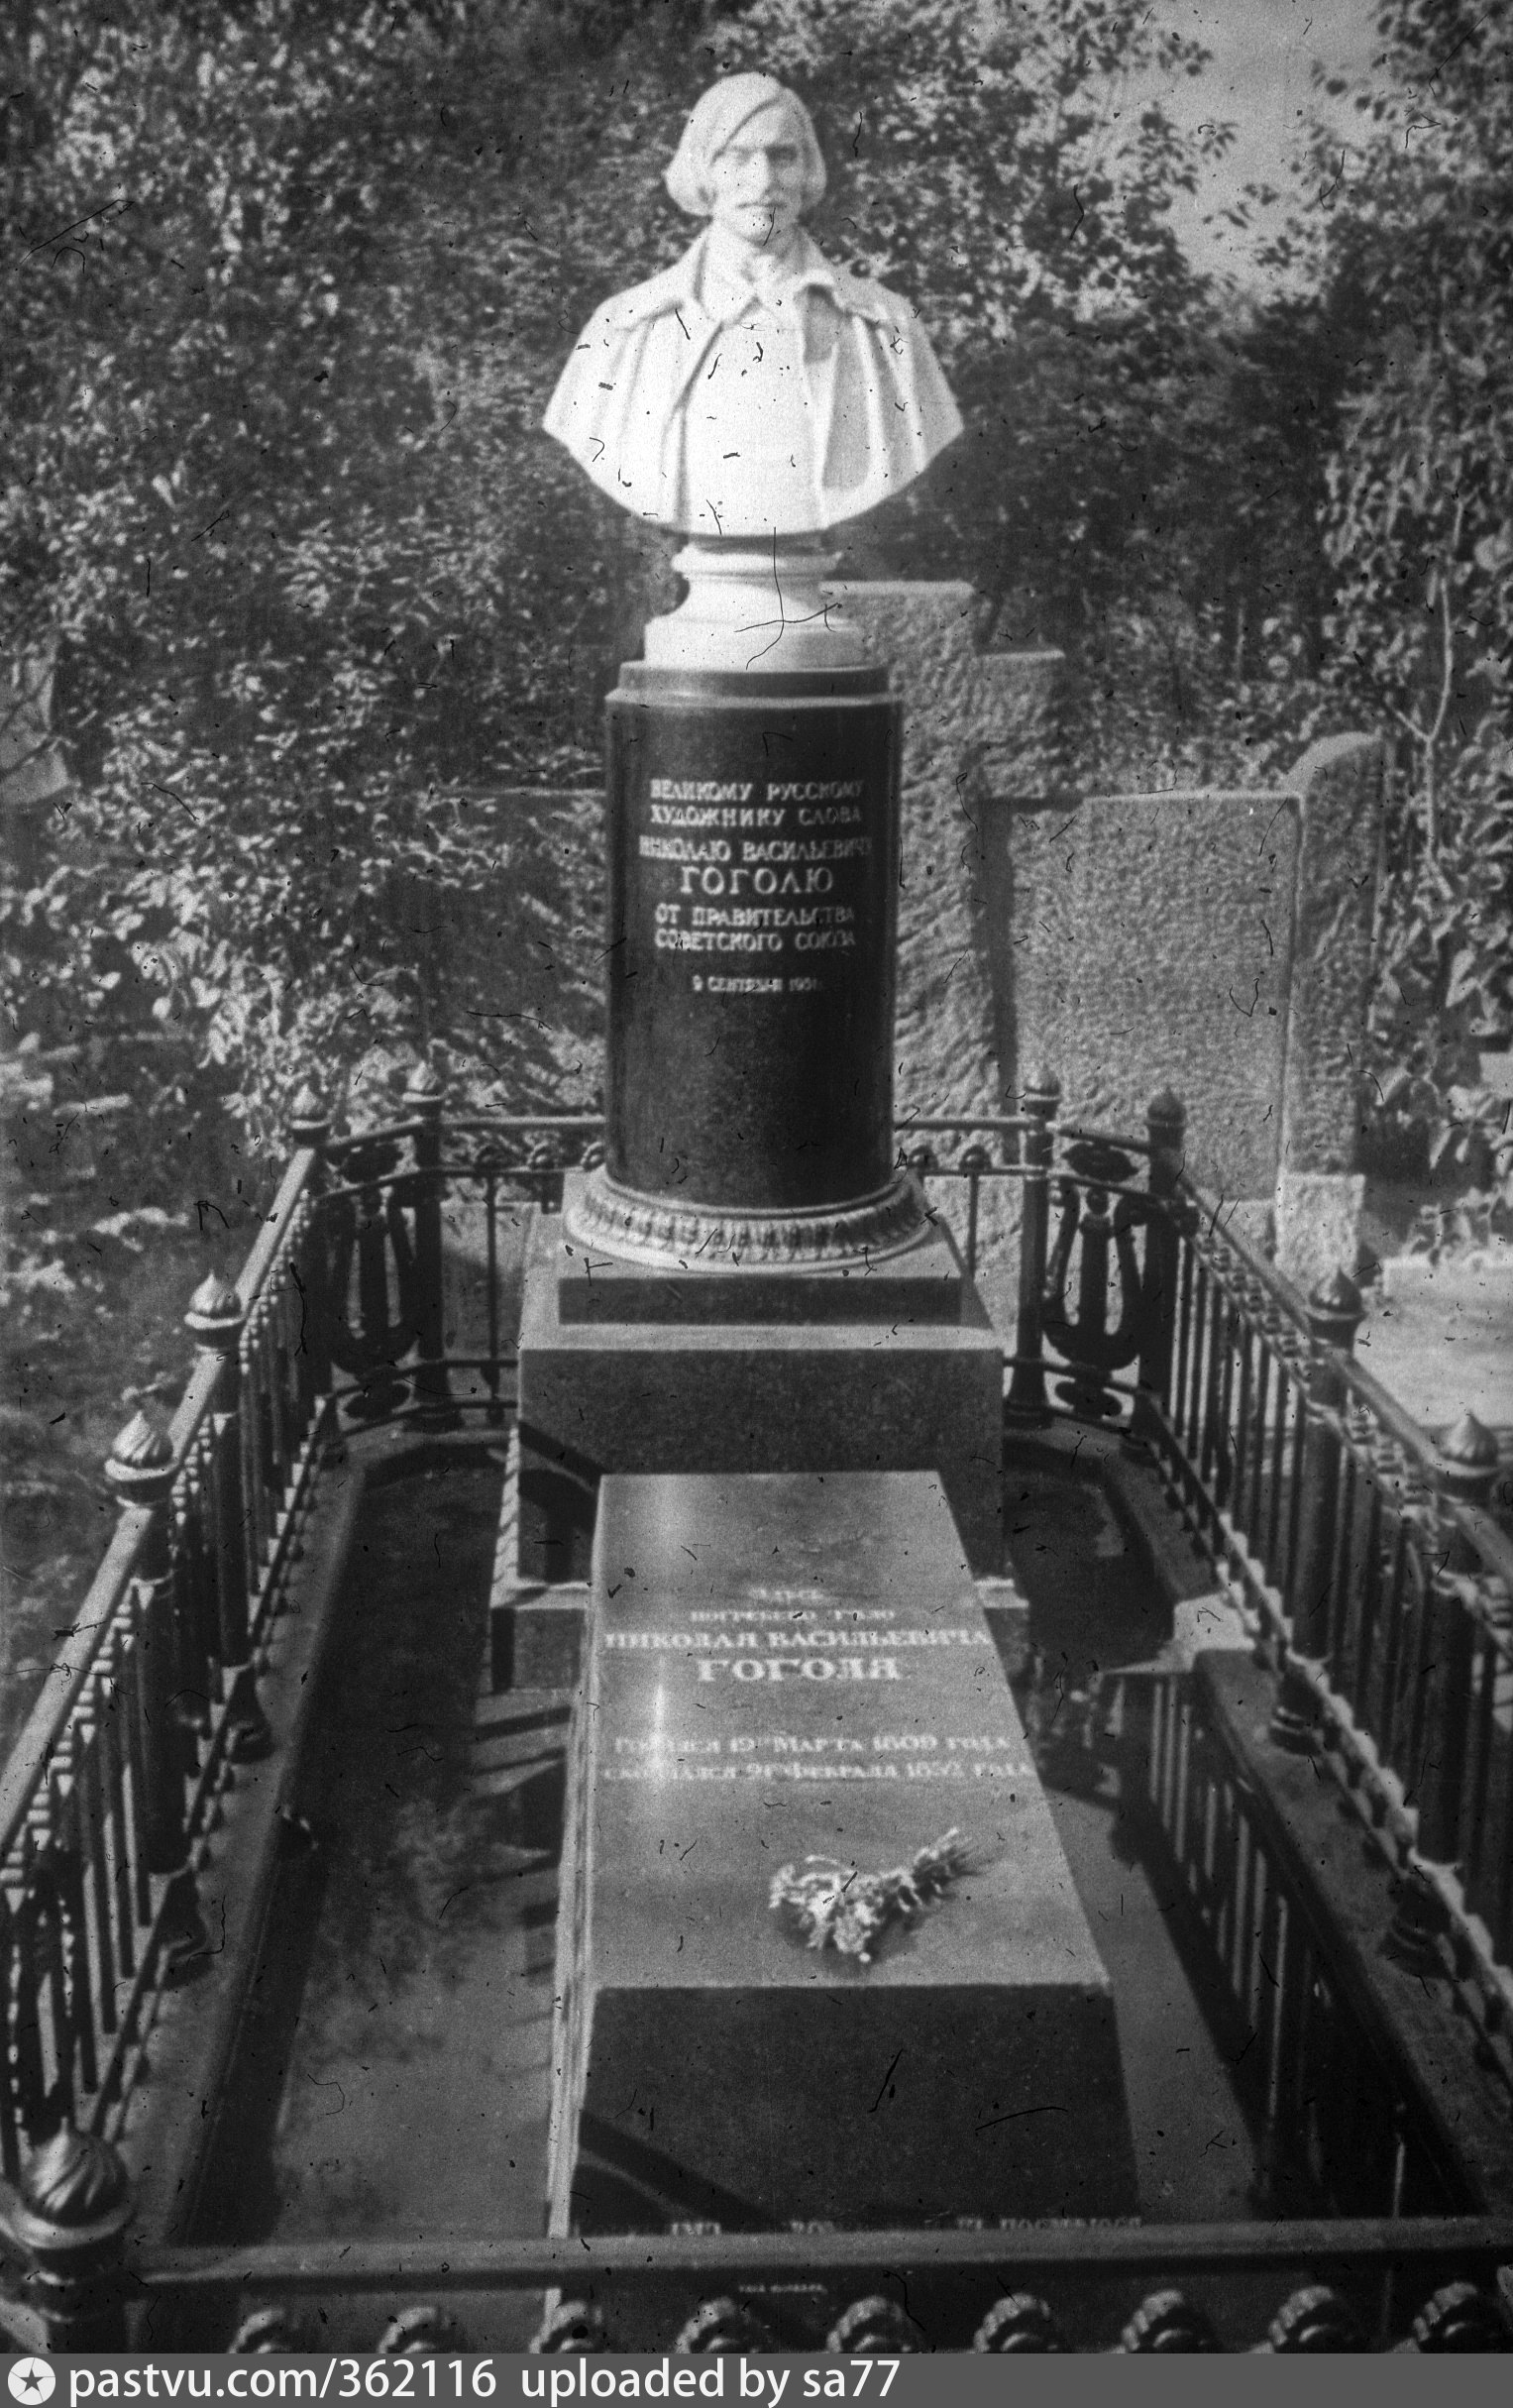 Могила Гоголя на Новодевичьем кладбище